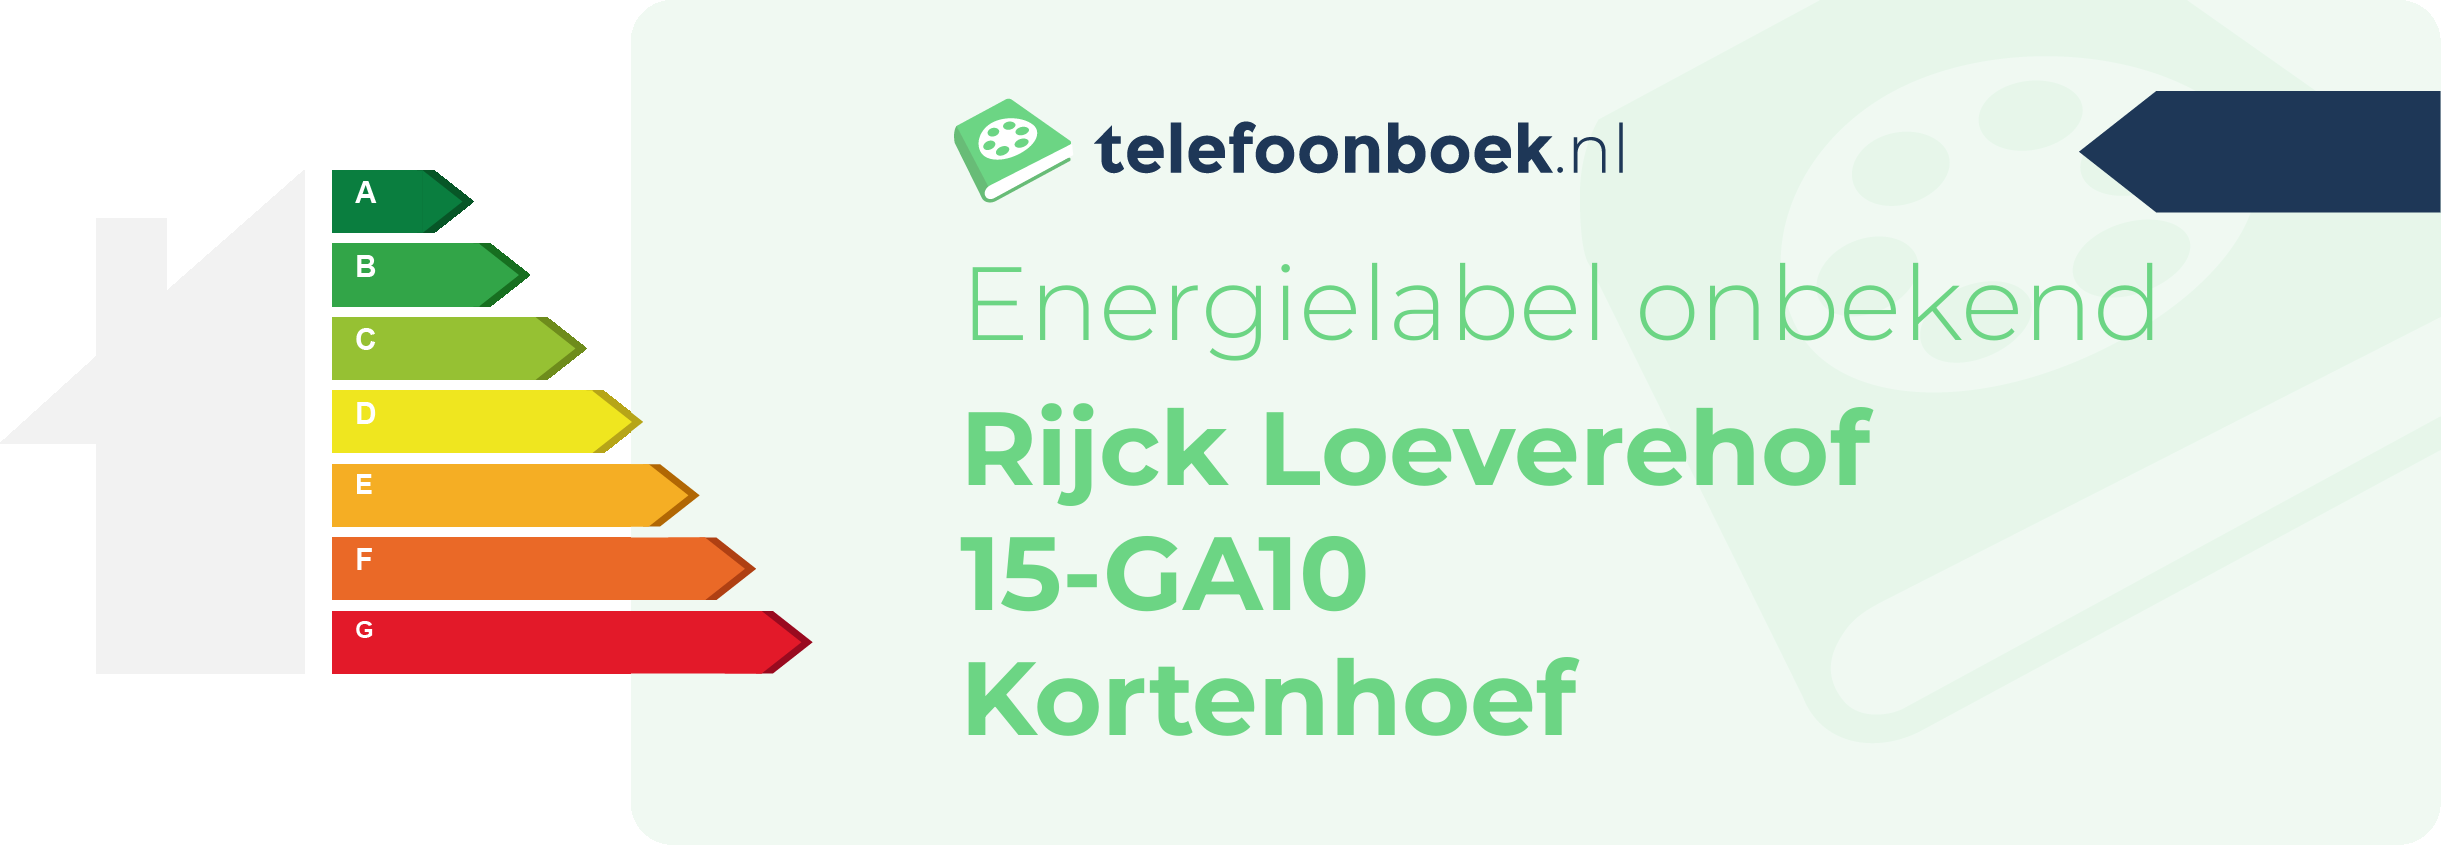 Energielabel Rijck Loeverehof 15-GA10 Kortenhoef